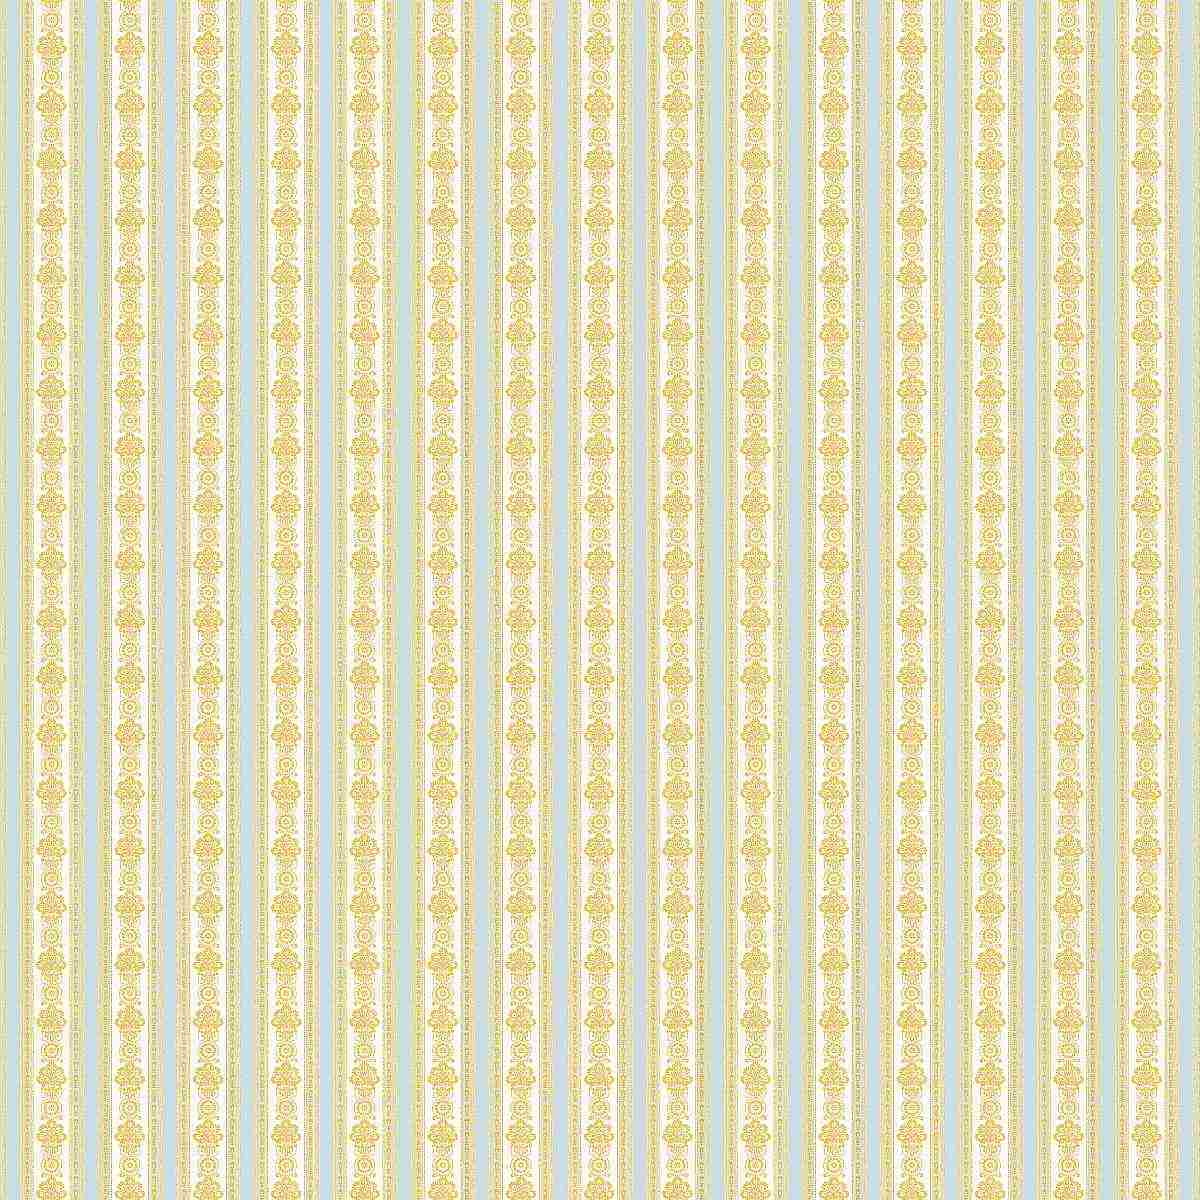 Wallpaper stripes